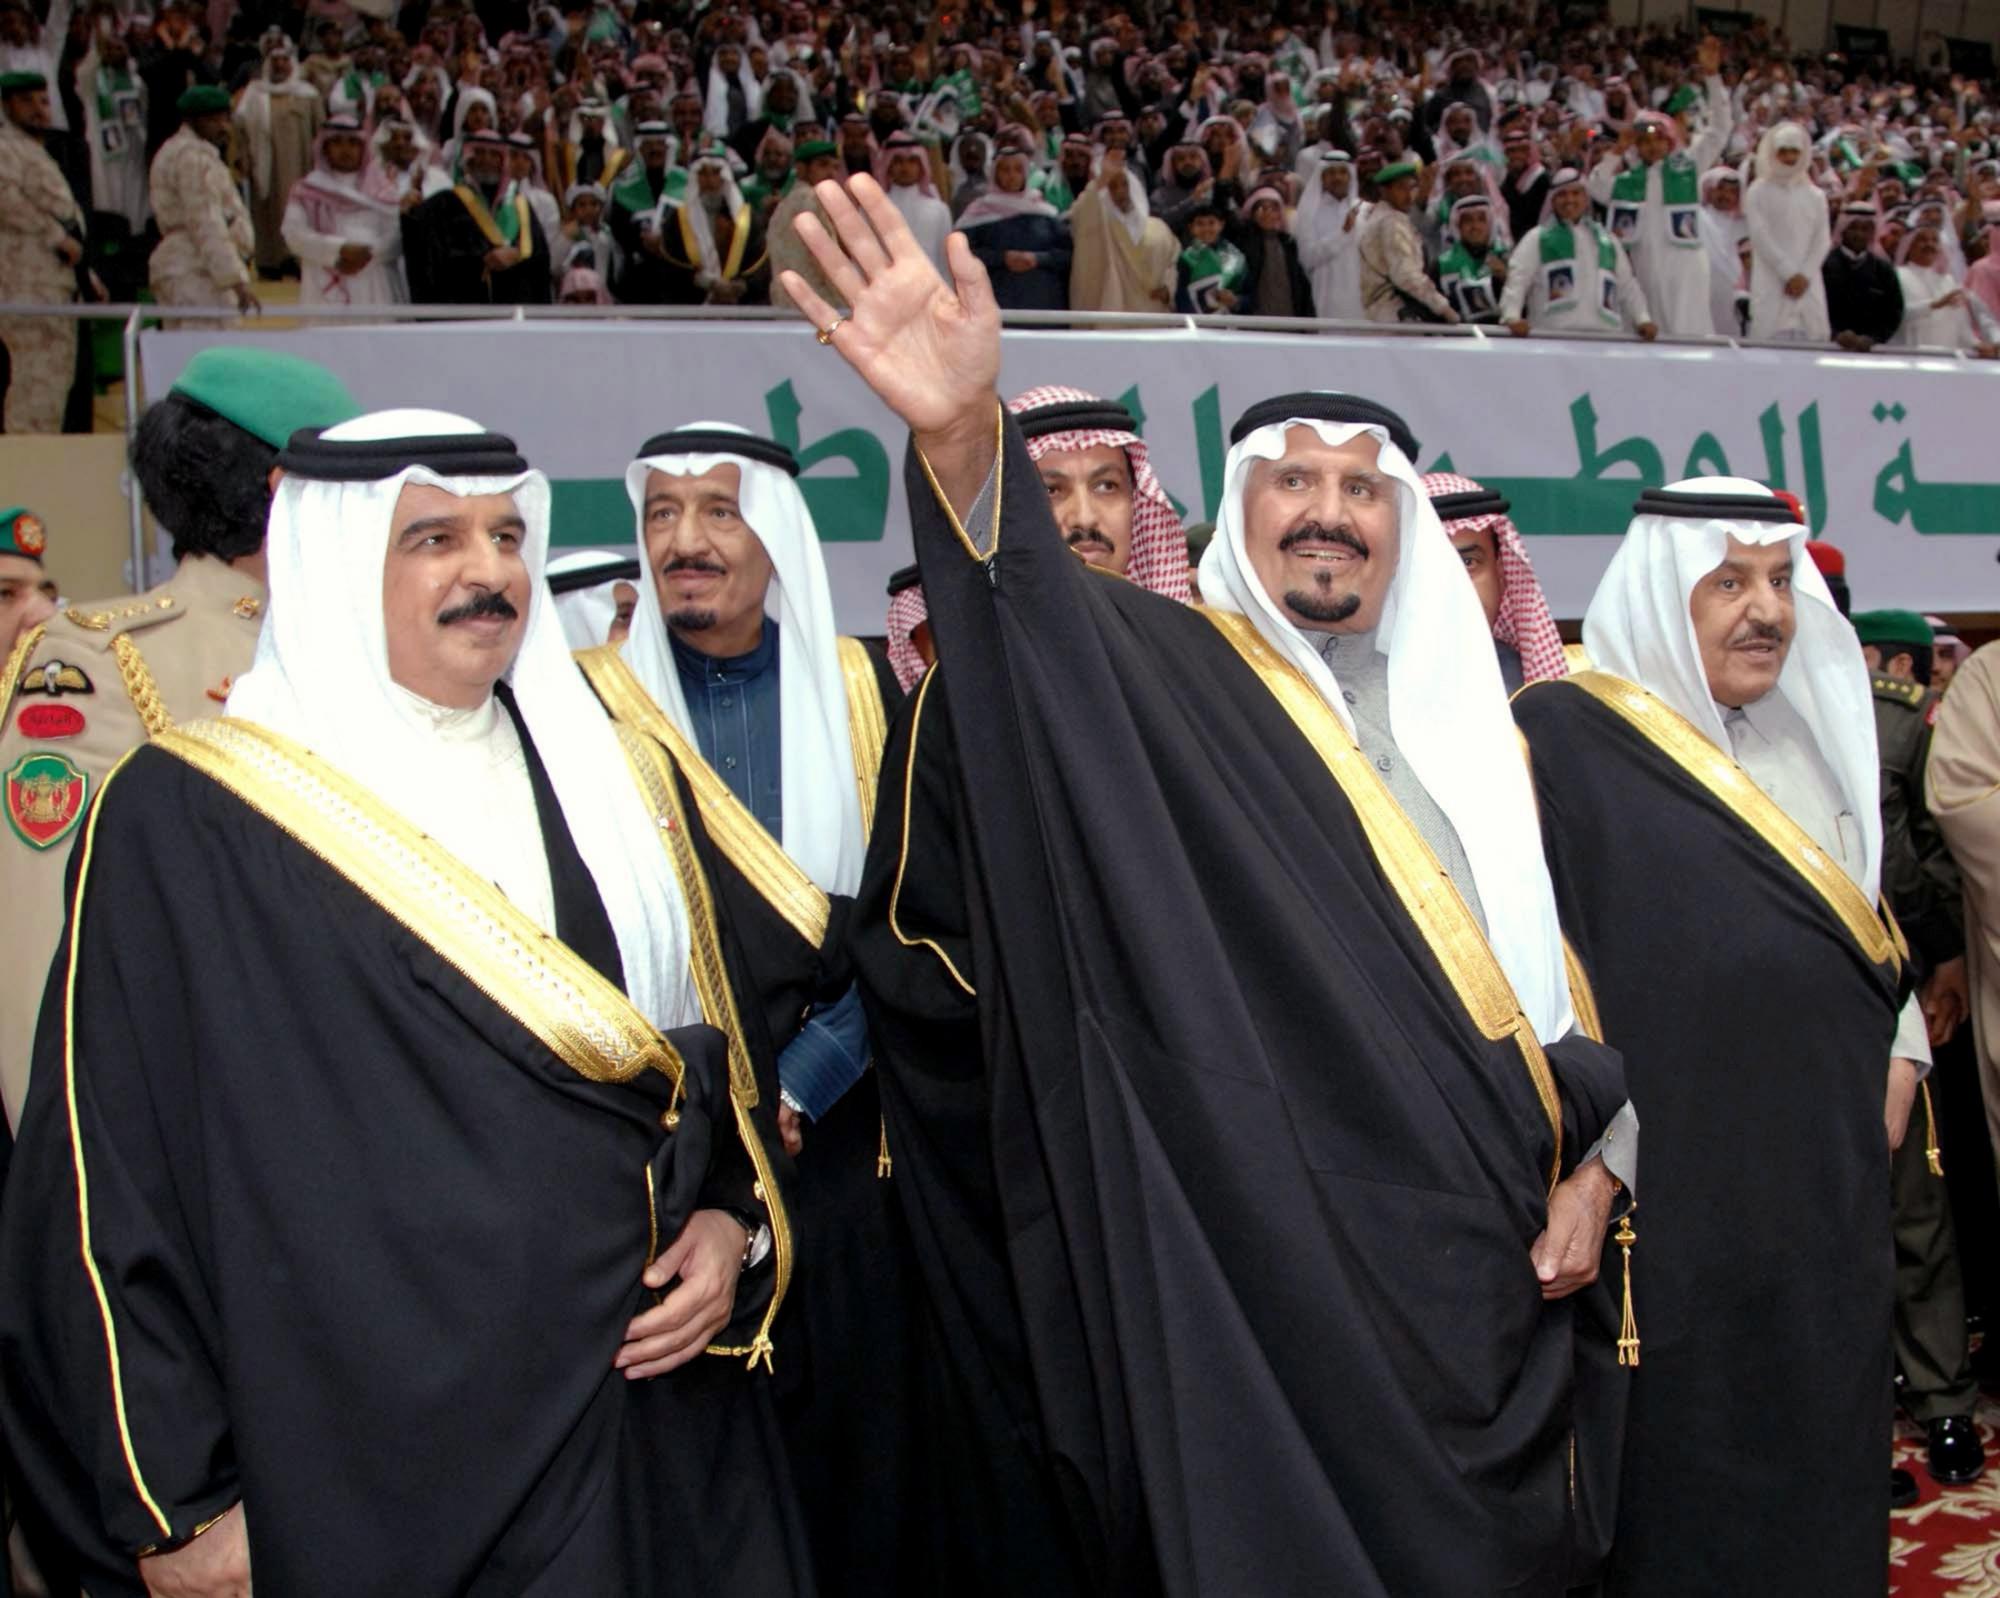 沙特王储苏尔坦在美国逝世 王位继承问题引关注